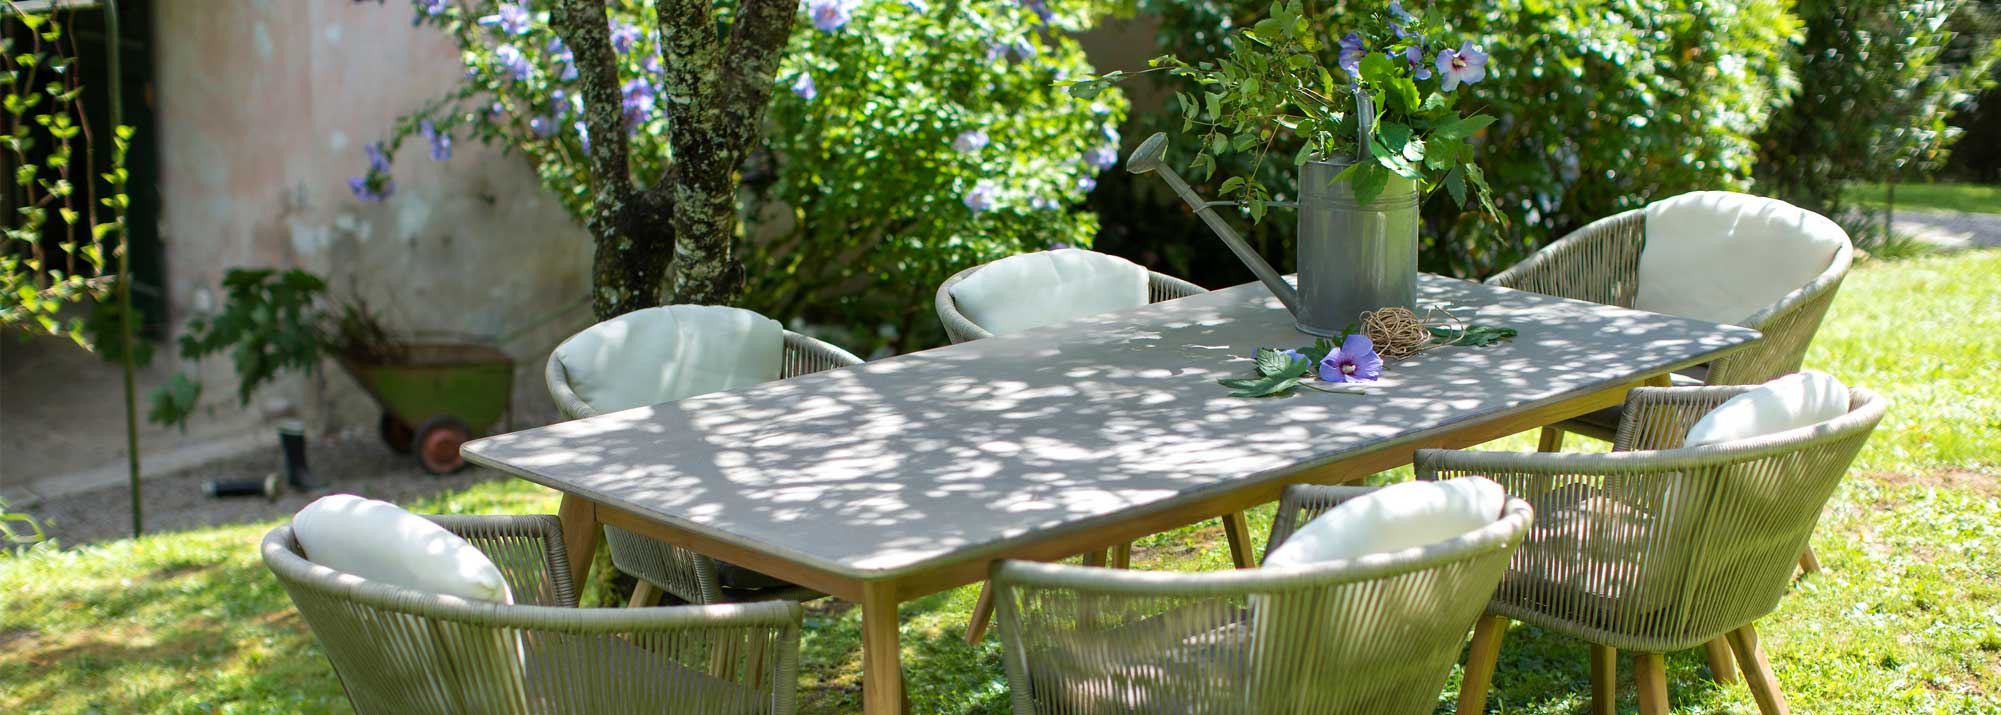 Table Et Chaise De Jardin : Botanic®, Ensembles Repas Et ... tout Botanic Meubles De Jardin